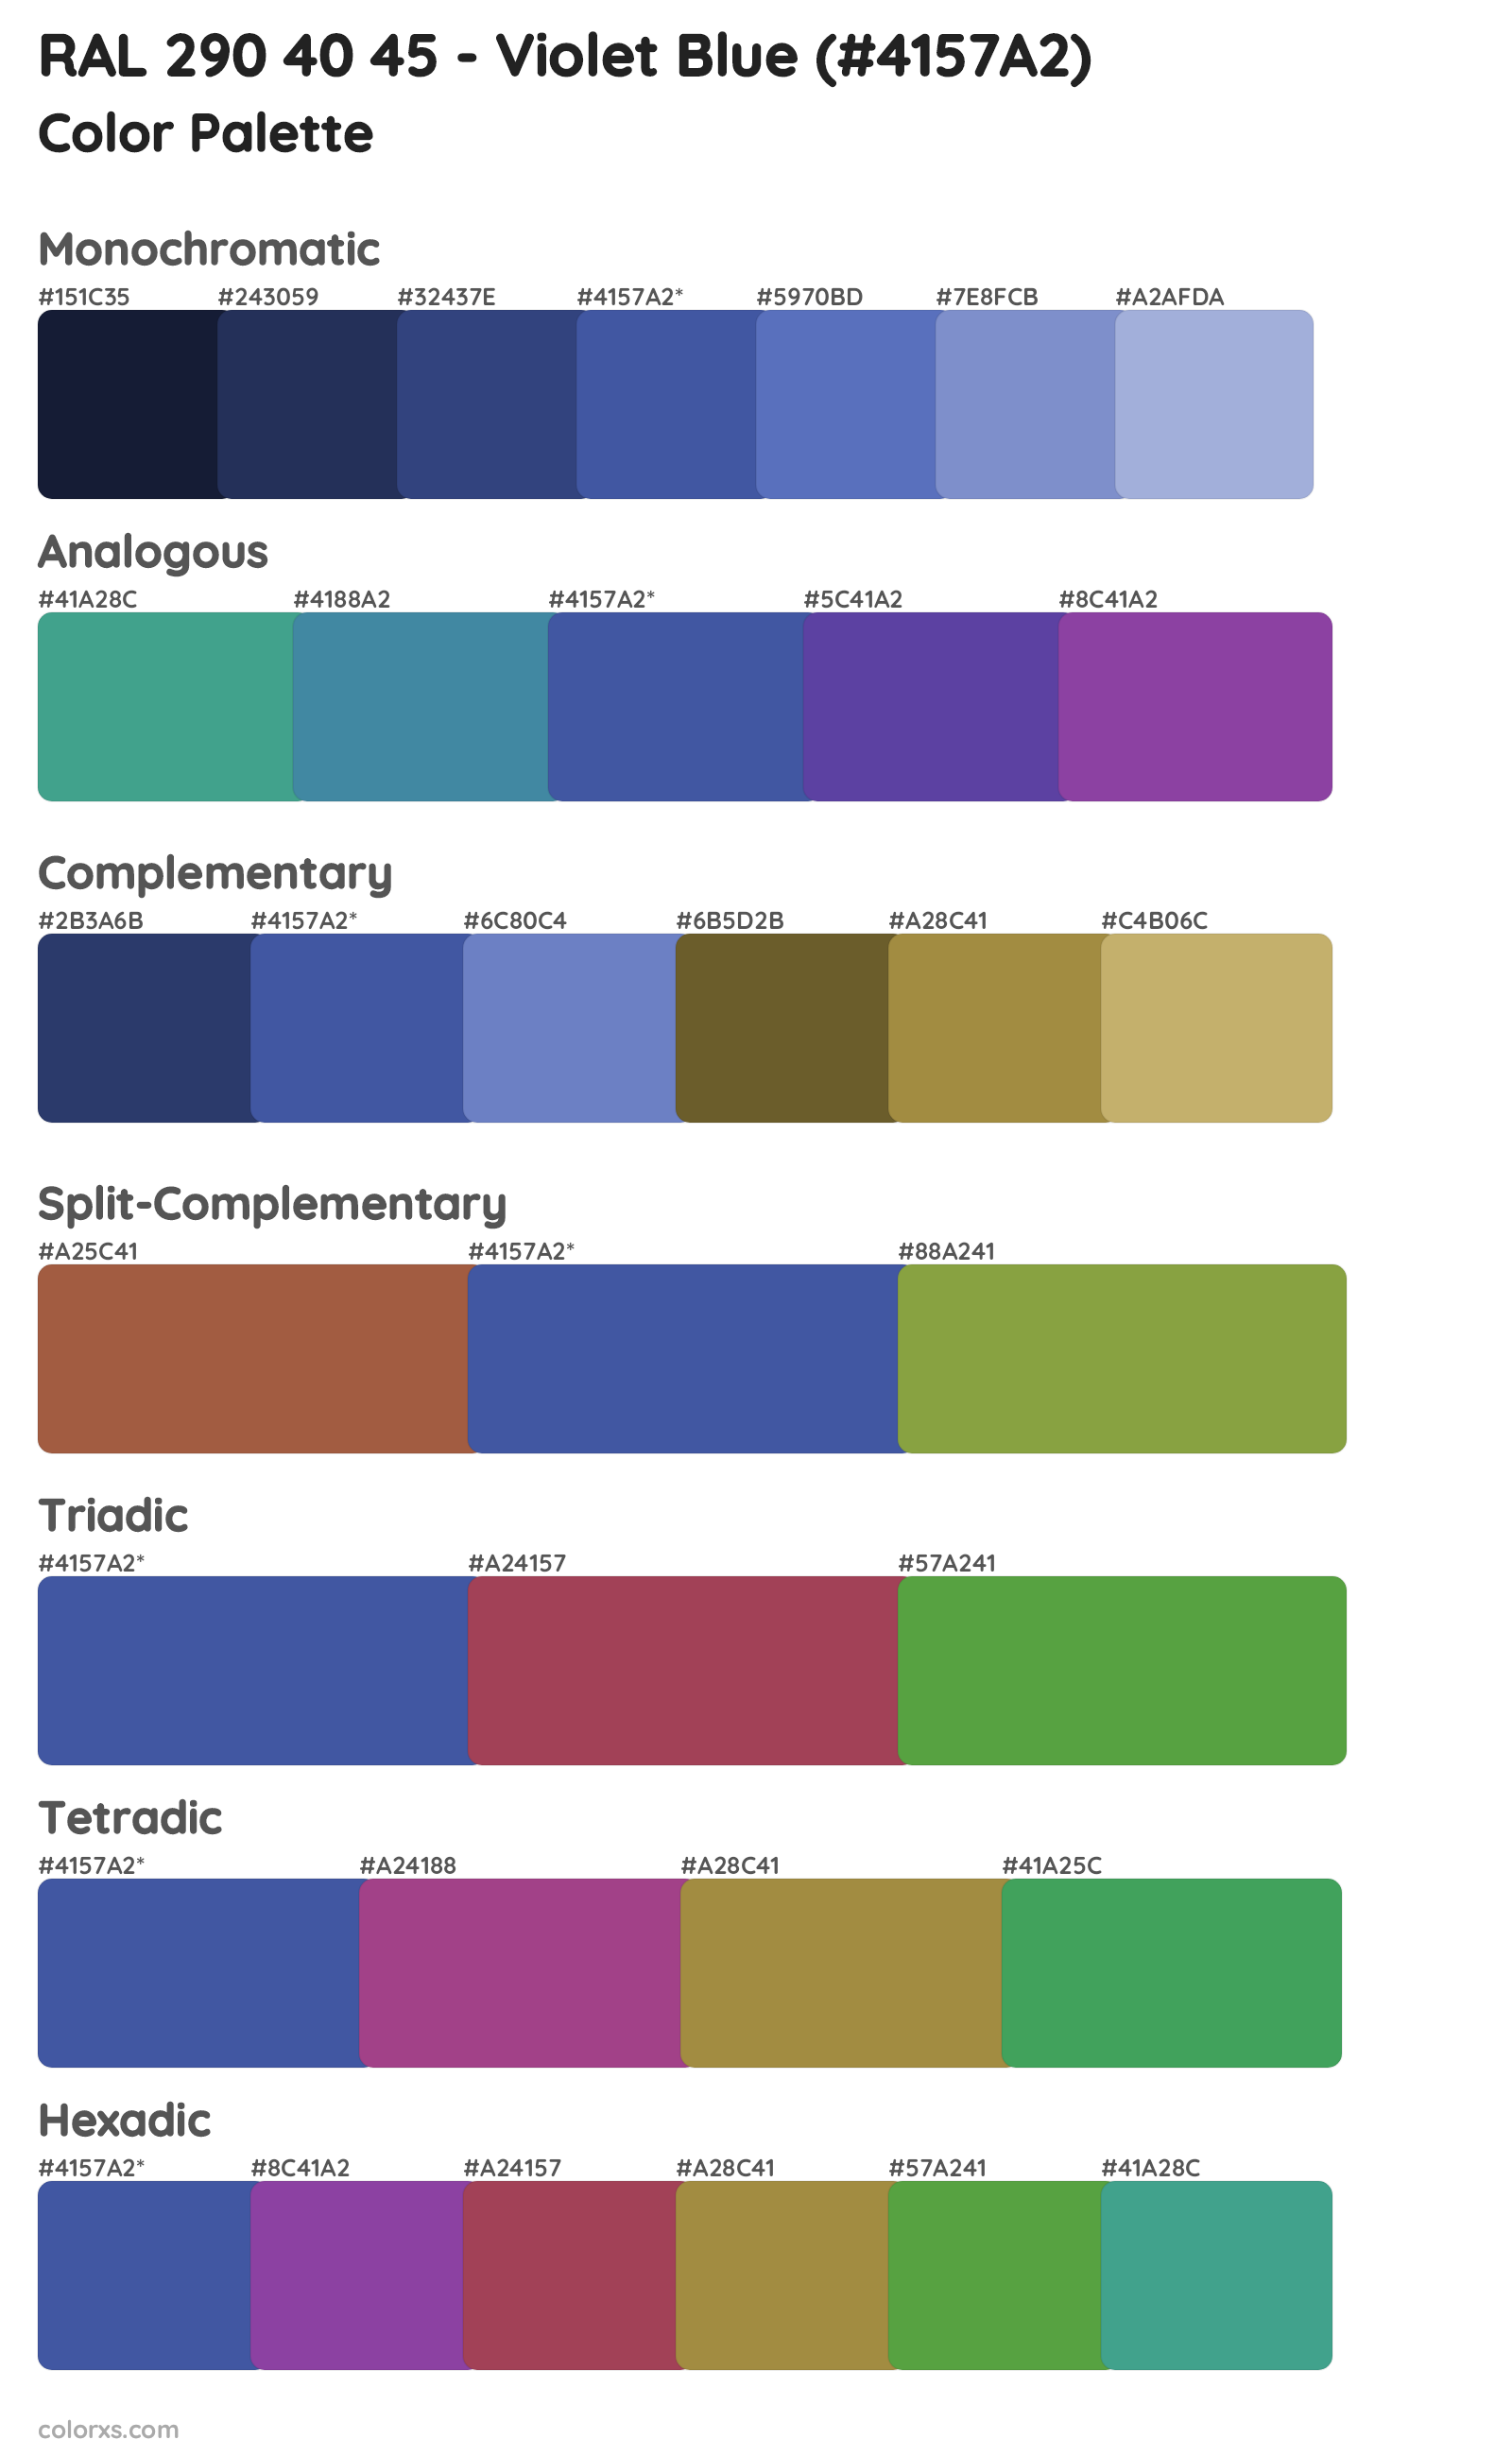 RAL 290 40 45 - Violet Blue Color Scheme Palettes